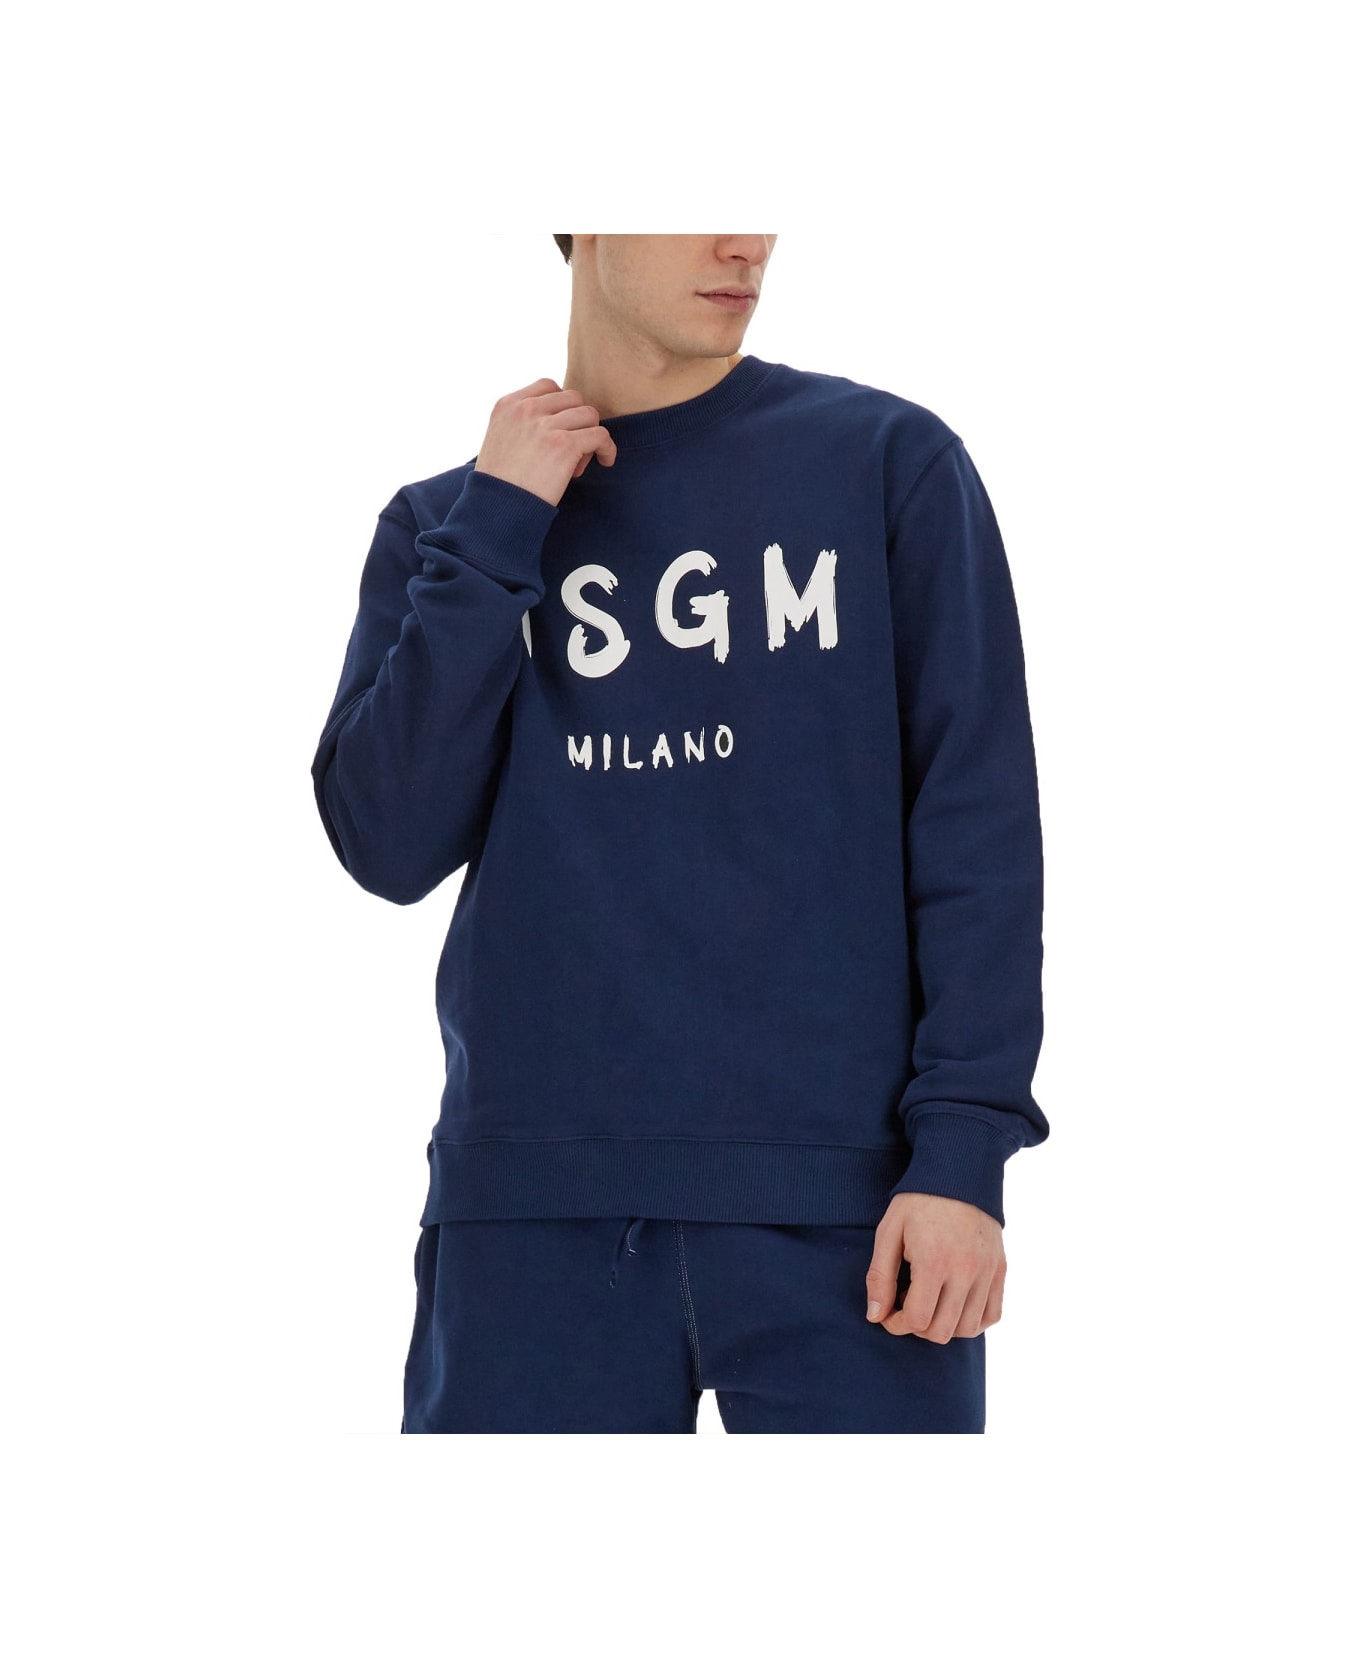 MSGM Sweatshirt With Brushed Logo - BLUE